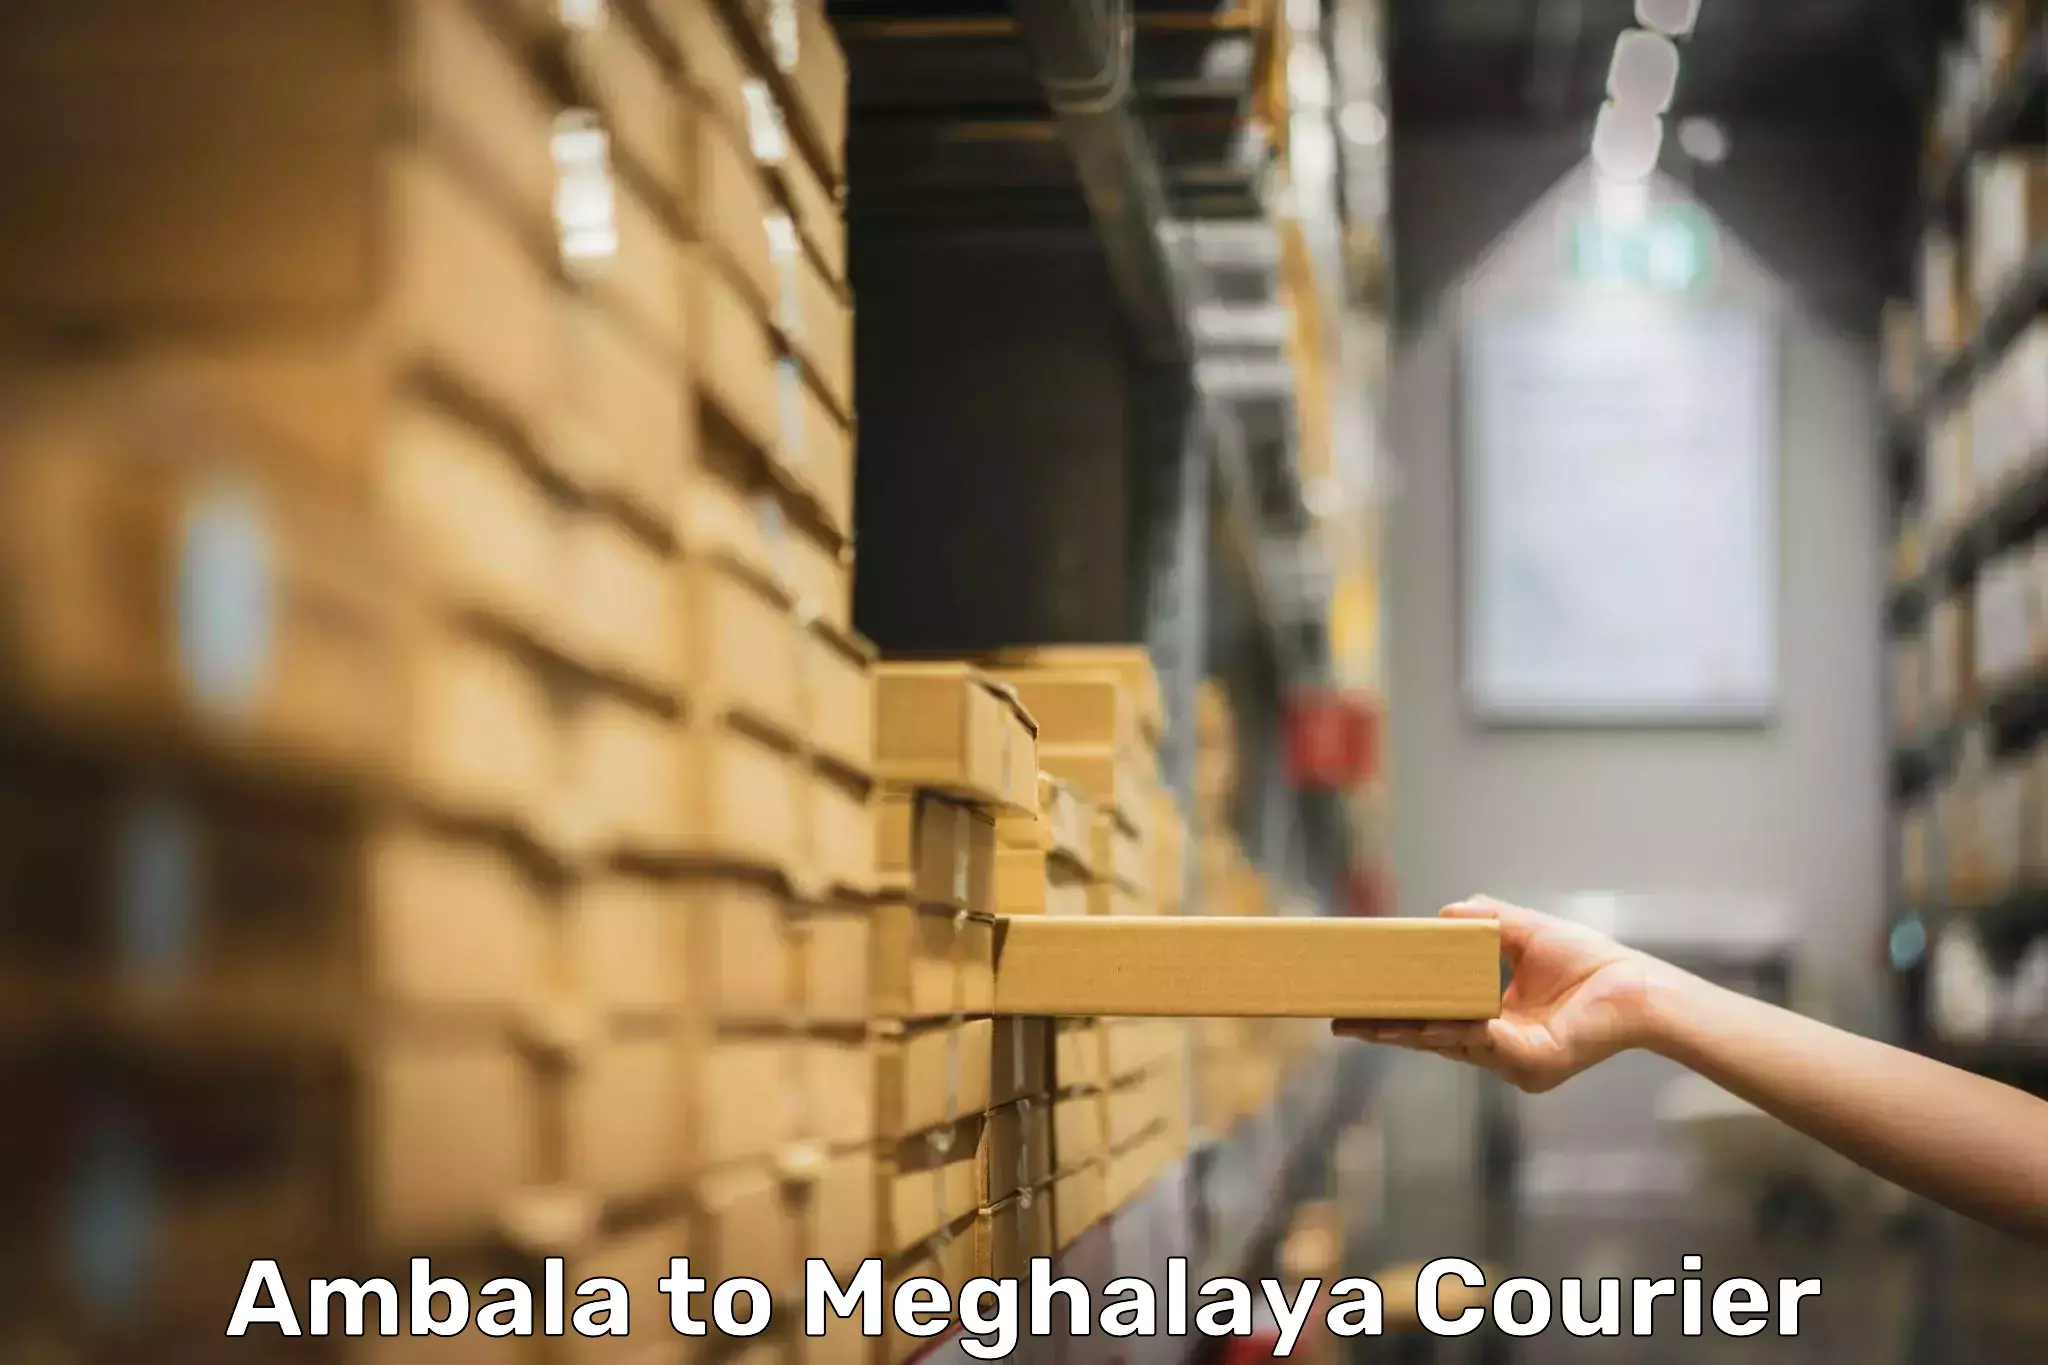 Luggage transfer service Ambala to Meghalaya